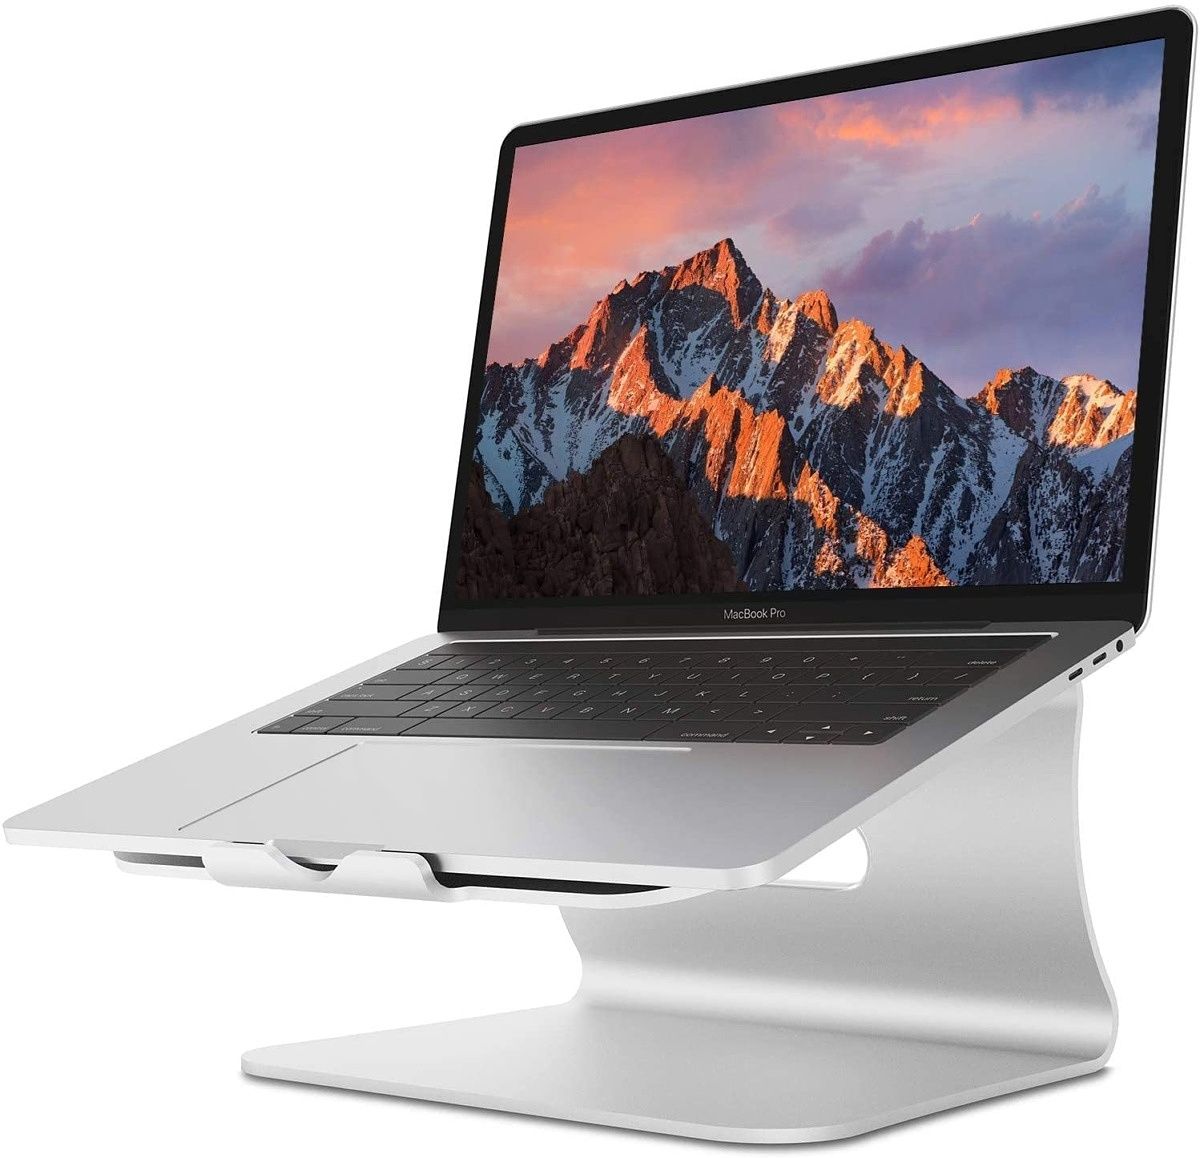 Ce support en aluminium est idéal pour ceux qui souhaitent soulever et incliner leur MacBook pour obtenir l'angle de travail parfait.  Il a des coussinets en silicone pour éviter de rayer votre Mac et résister aux glissades.